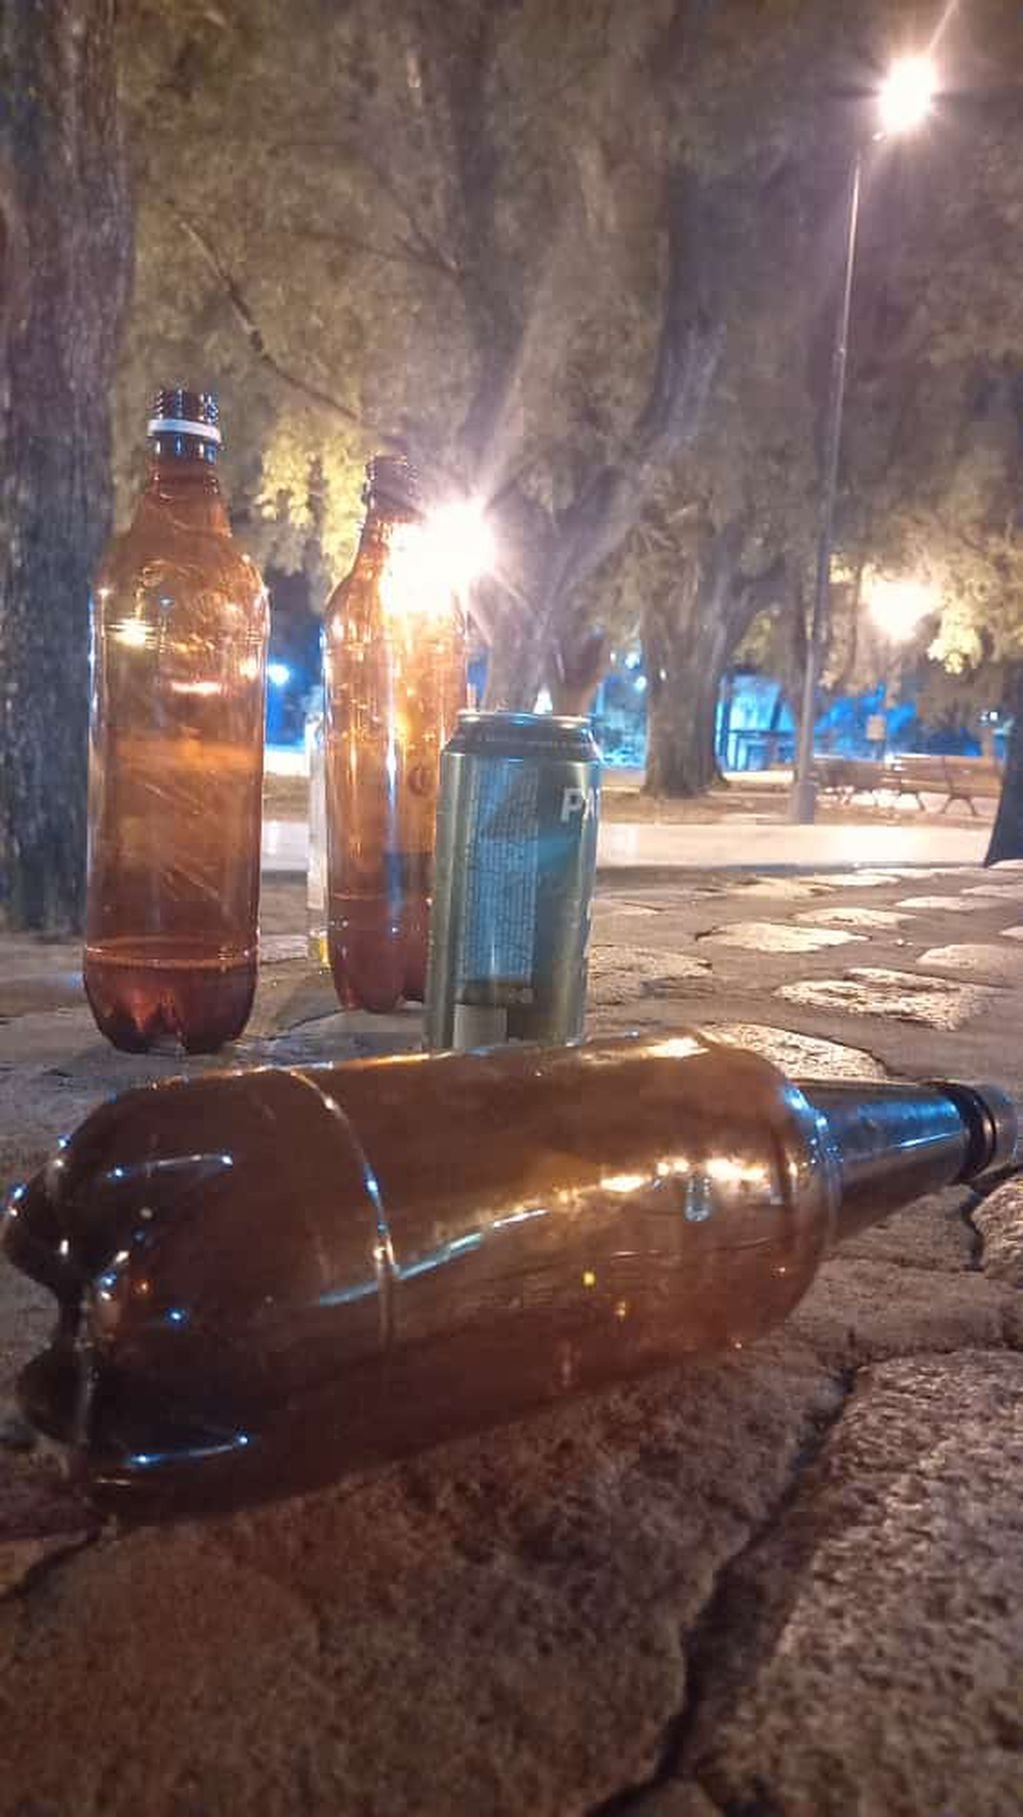 La Policía se encontró con varios envases de cerveza tirados luego del evento ilegal. (@mariogaloppo)